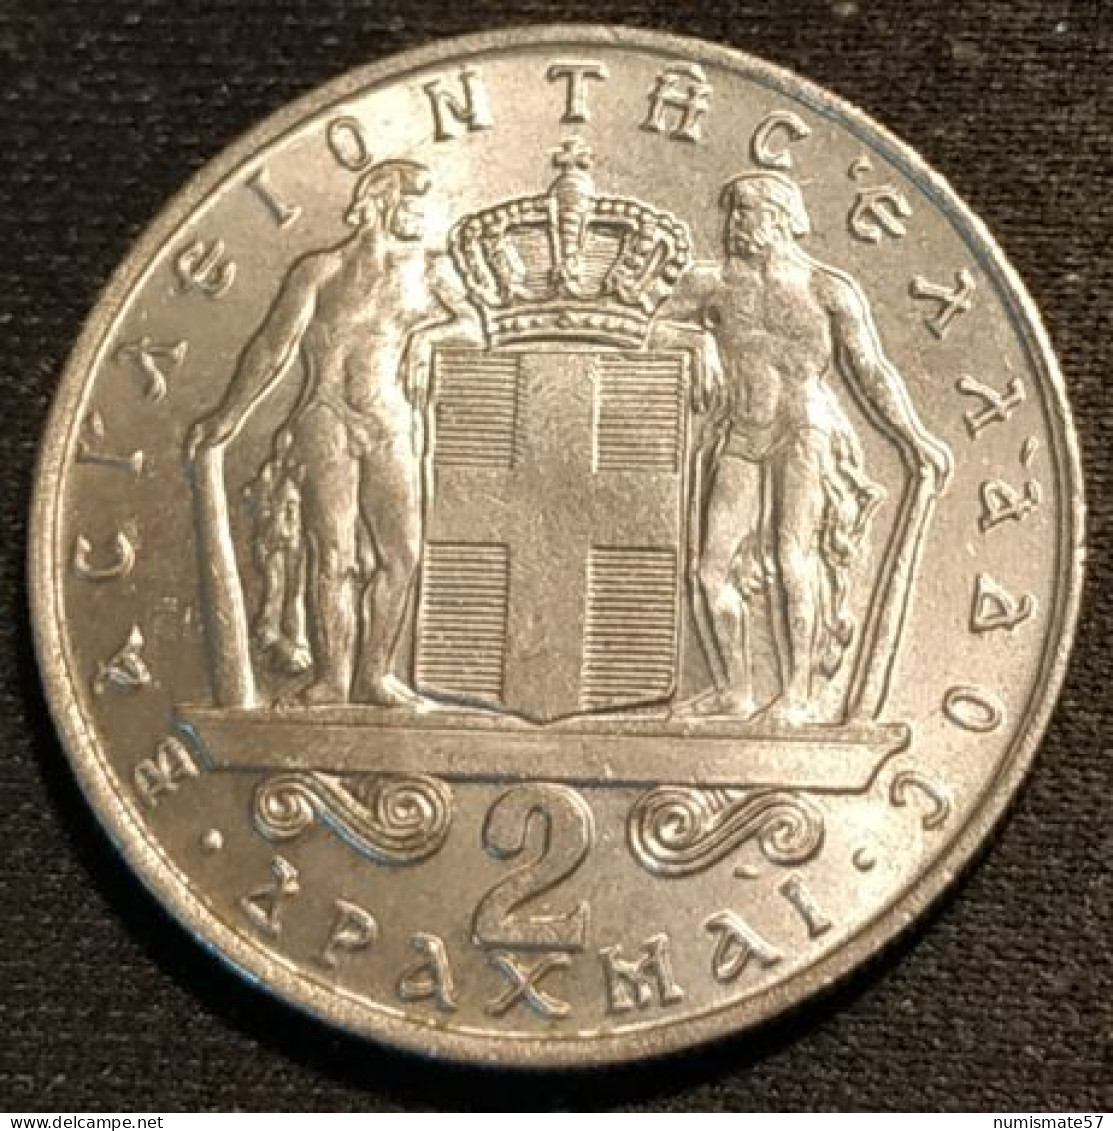 GRECE - GREECE - 2 DRACHMAI 1967 - Royaume - Constantin II - KM 90 - Grèce